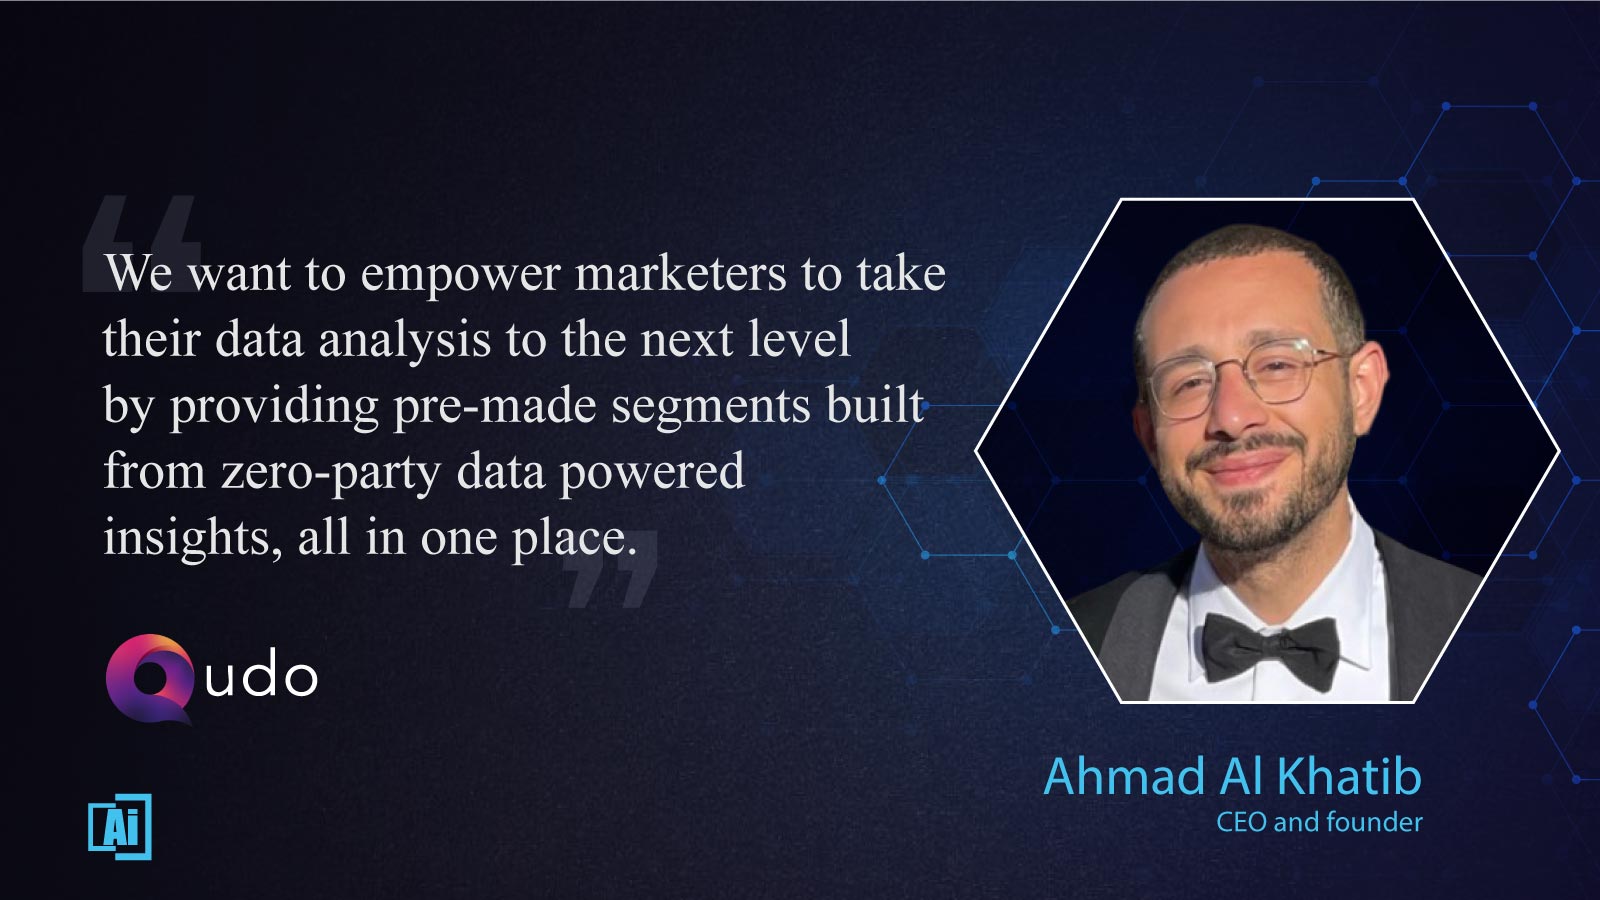 Ahmad Al Khatib, CEO and Founder at Qudo